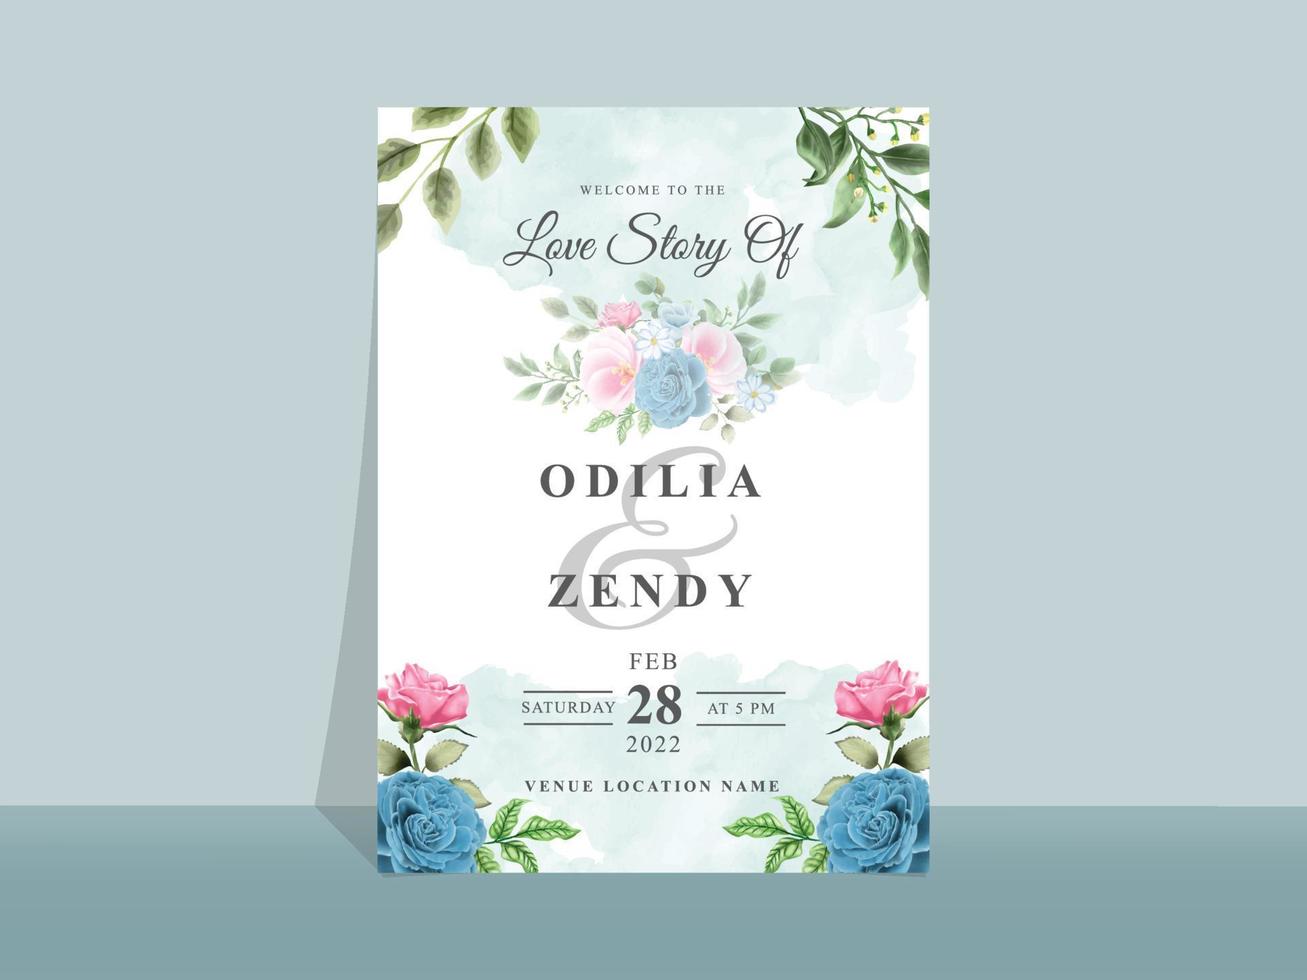 hermosa tarjeta de invitación de boda con flores azules y rosas vector